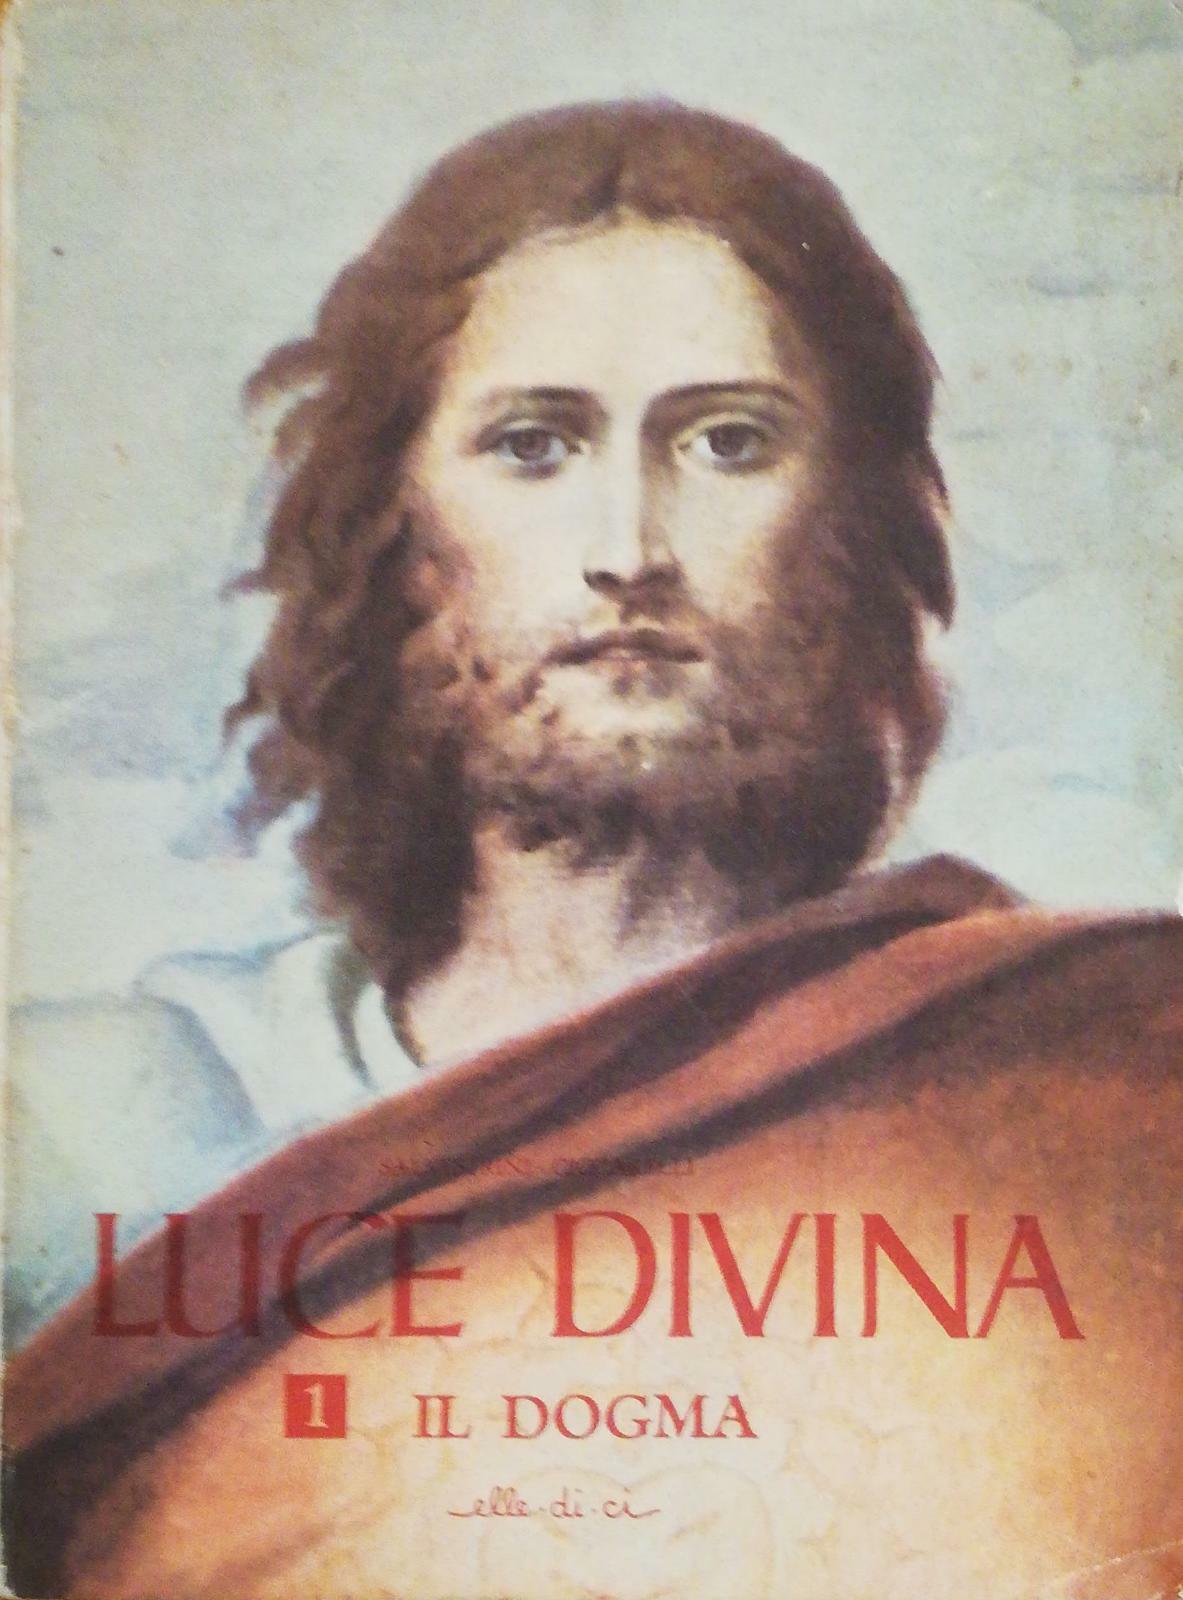 Luce divina di Salvestrini, Ciccarelli, volume I, 1952, Elle.di.ci -D